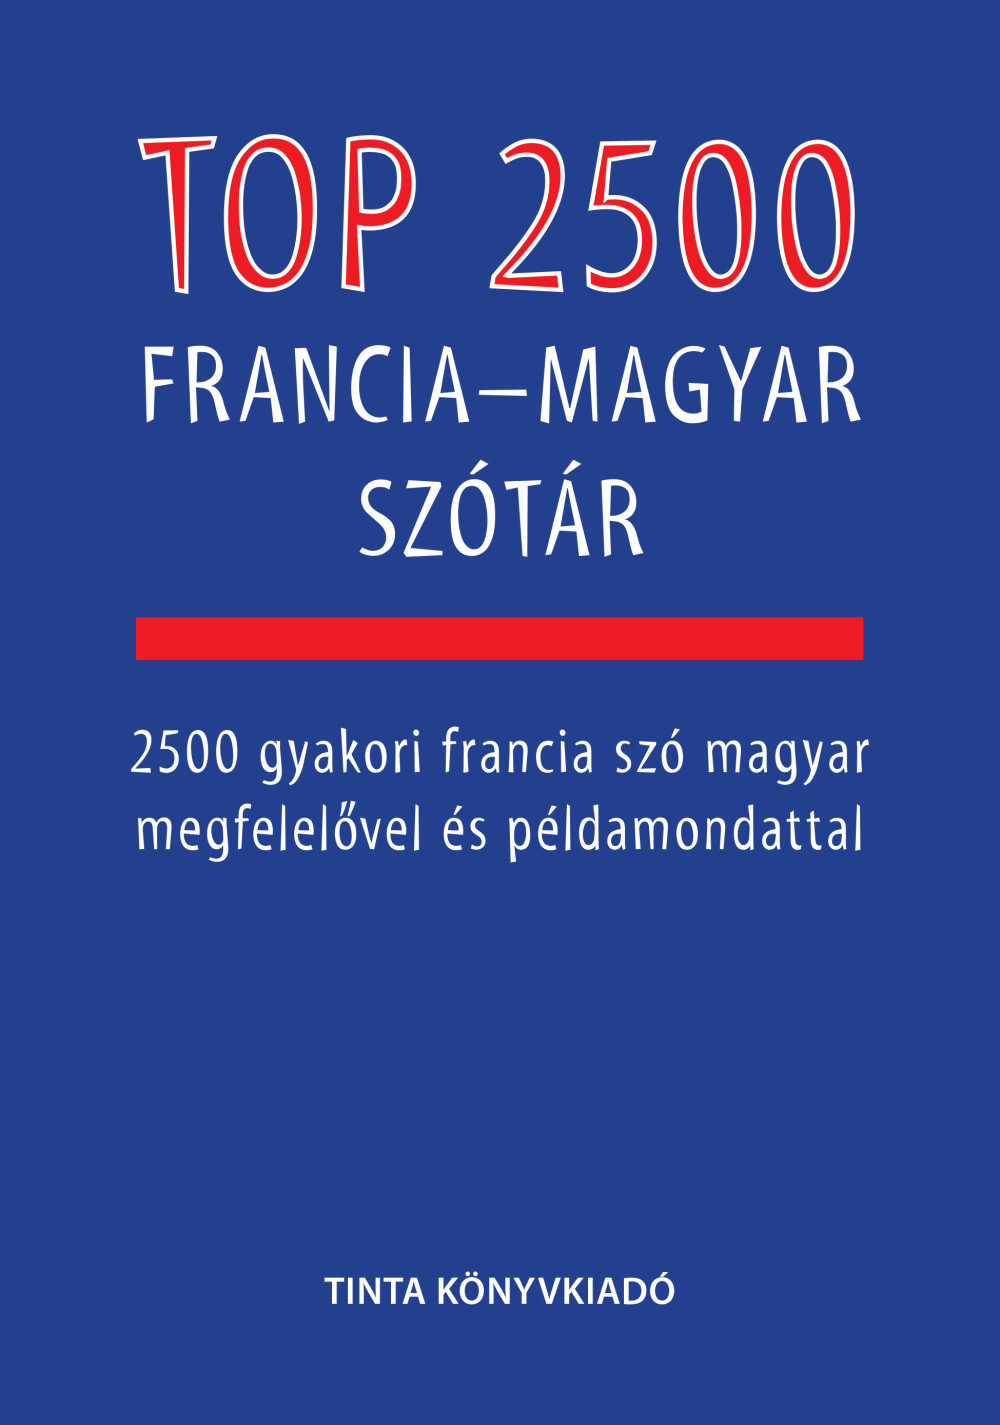 top_2500_francia_magyar_szotar.jpg